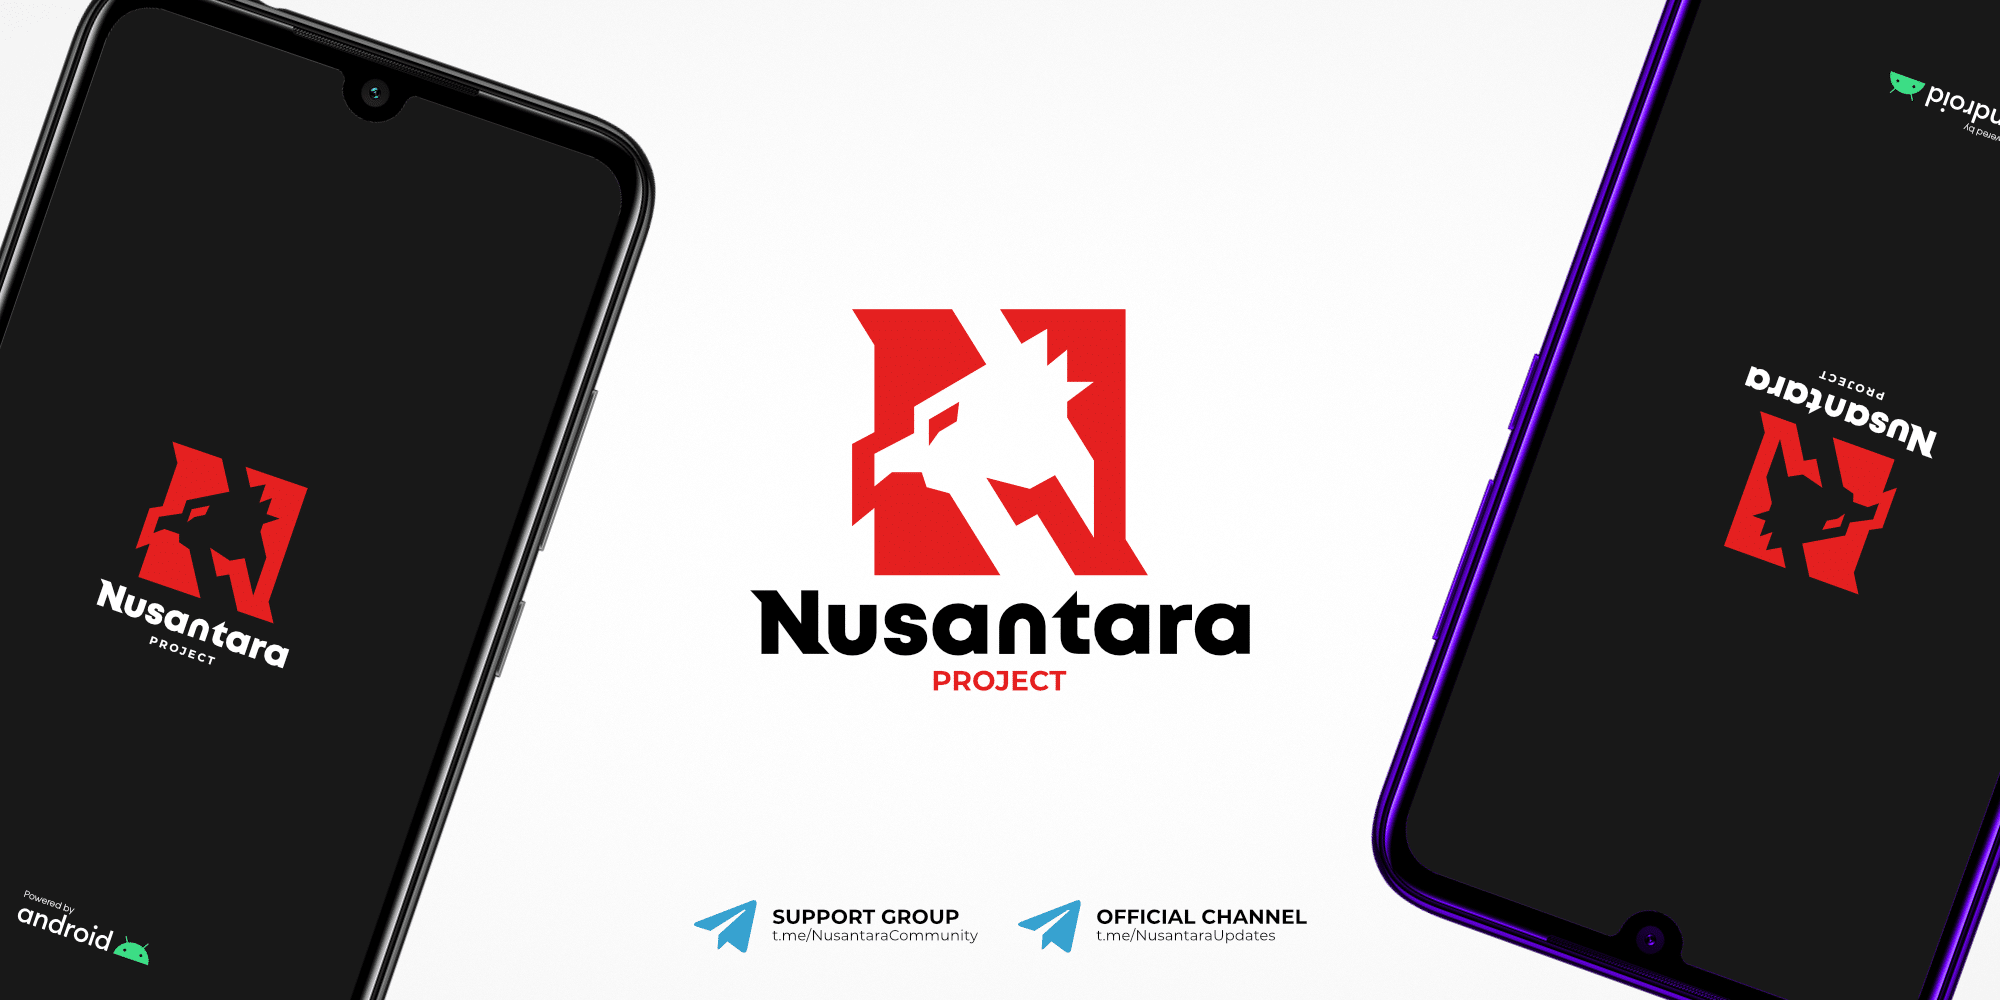 Nusantara project